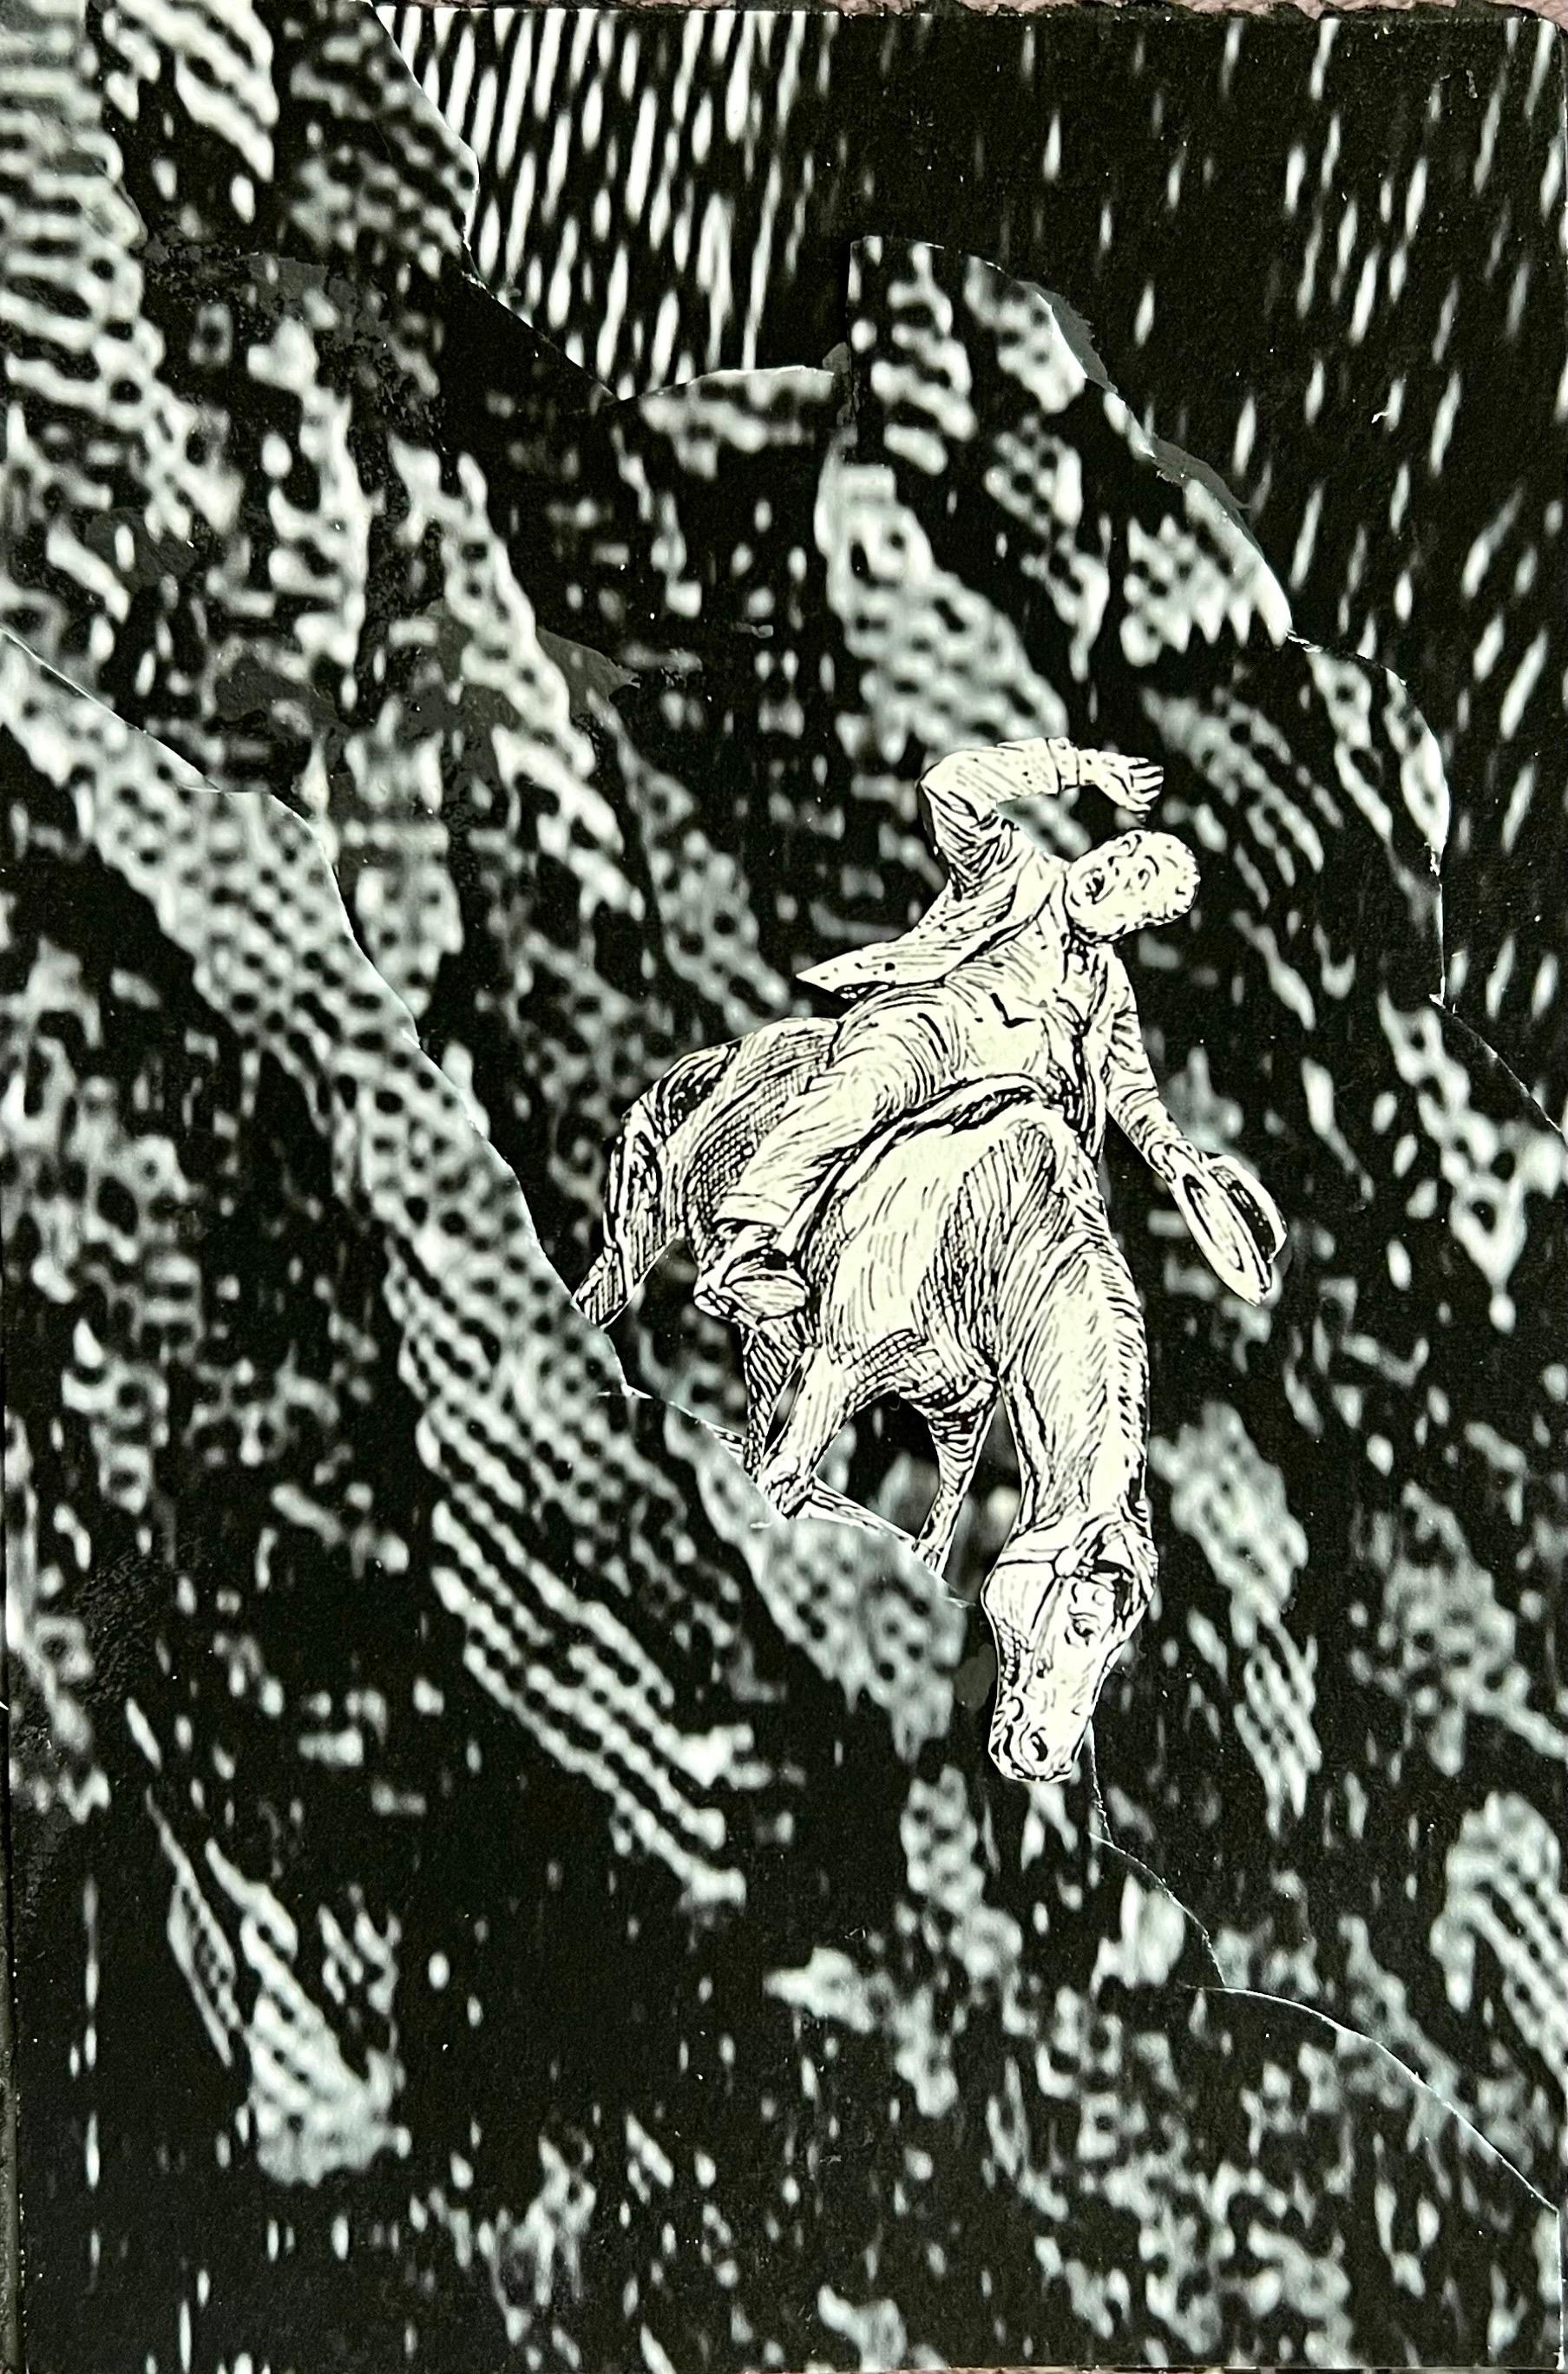 DAVID JAMES GILHOOLY (américain, 1943-2013), 
Collage mixte
6 x 4 pouces,  
Signé à la main et daté au verso
intitulé : "De nombreux titres frivoles me viennent à l'esprit"
Un homme à cheval, un homme et un cheval.
assemblage de papier cartonné